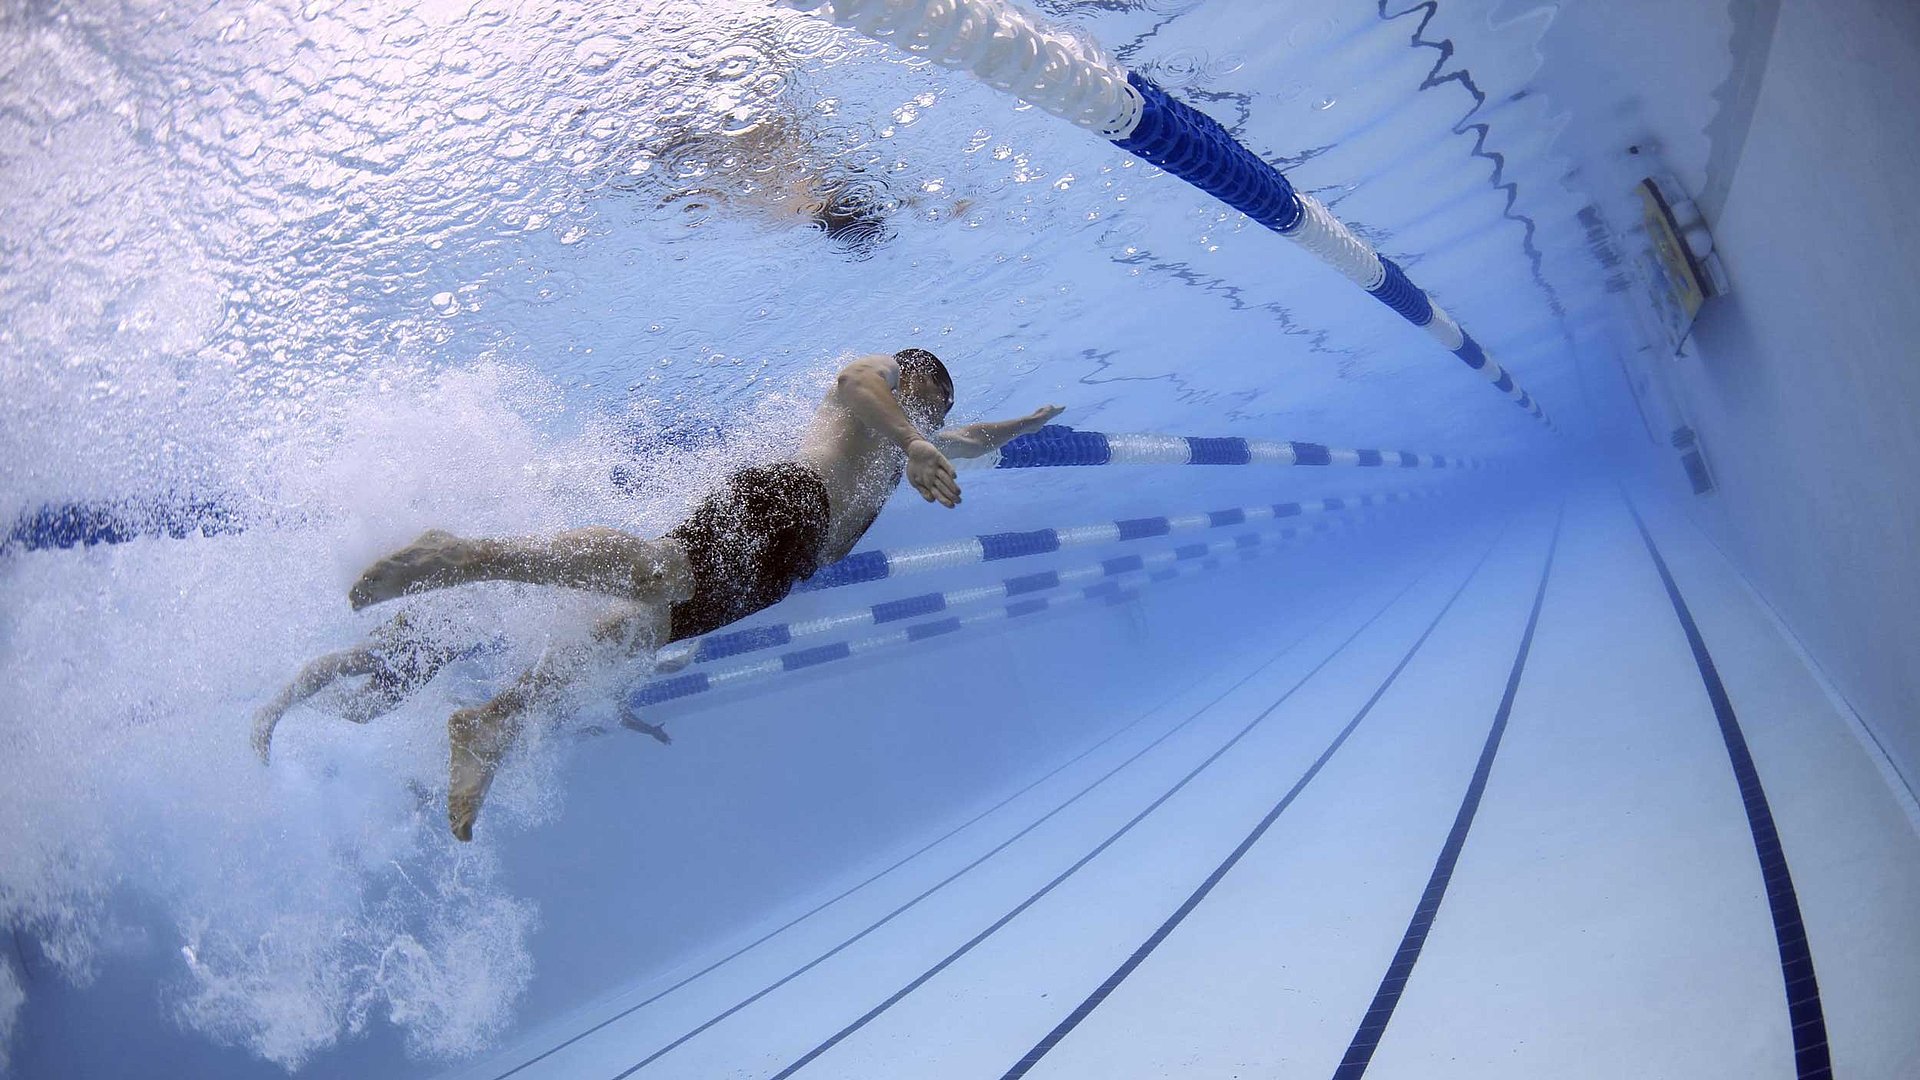 Freizeit und Sport in Franken - Unterwasserbild eines Schwimmers auf einer Bahn